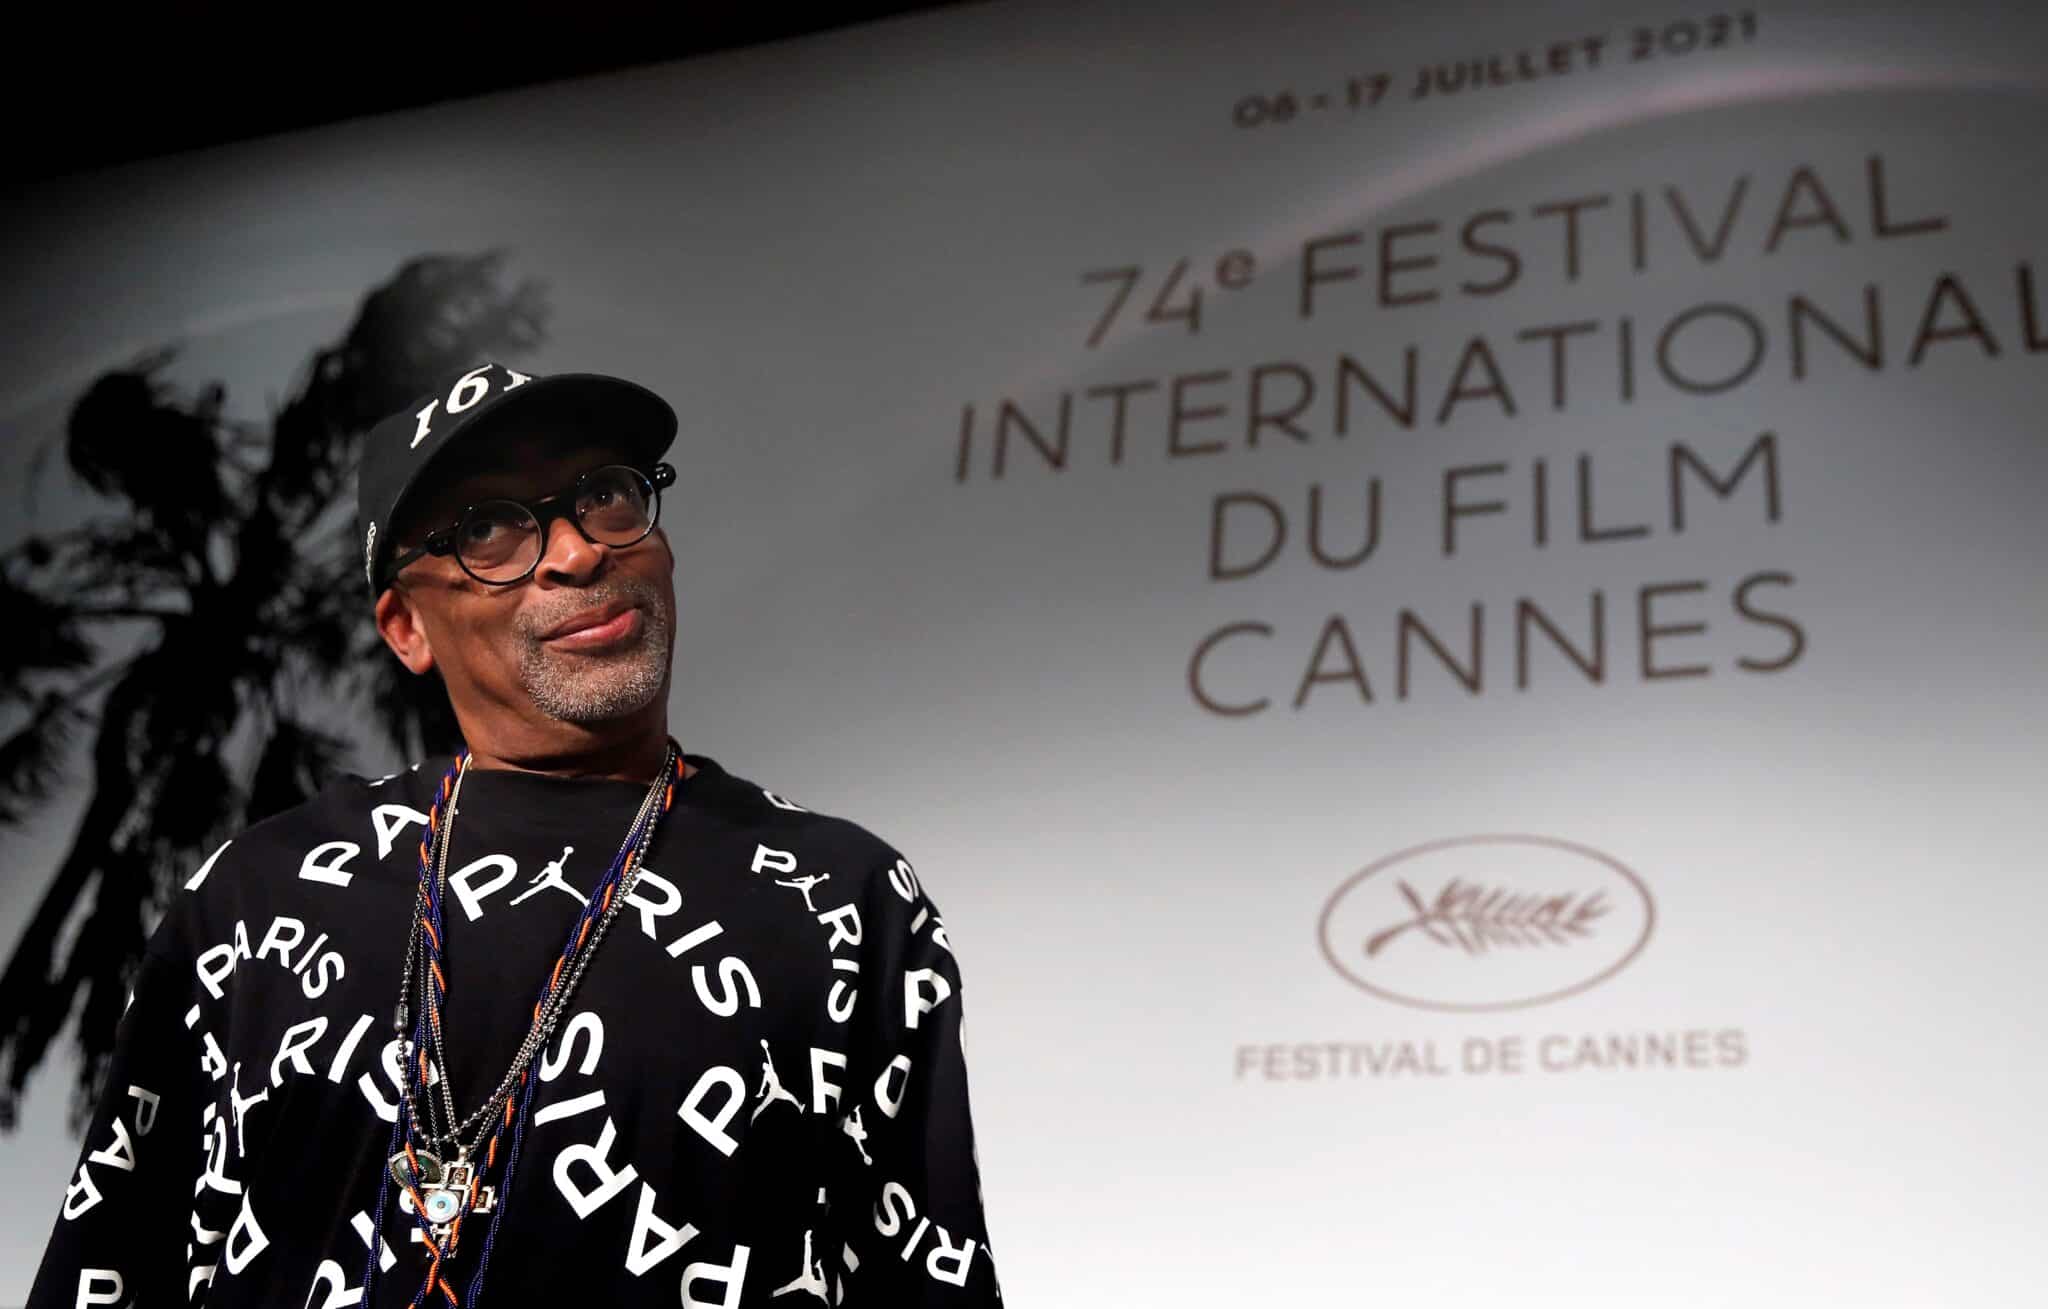 El cine español regresa a la normalidad en el Festival de Cannes